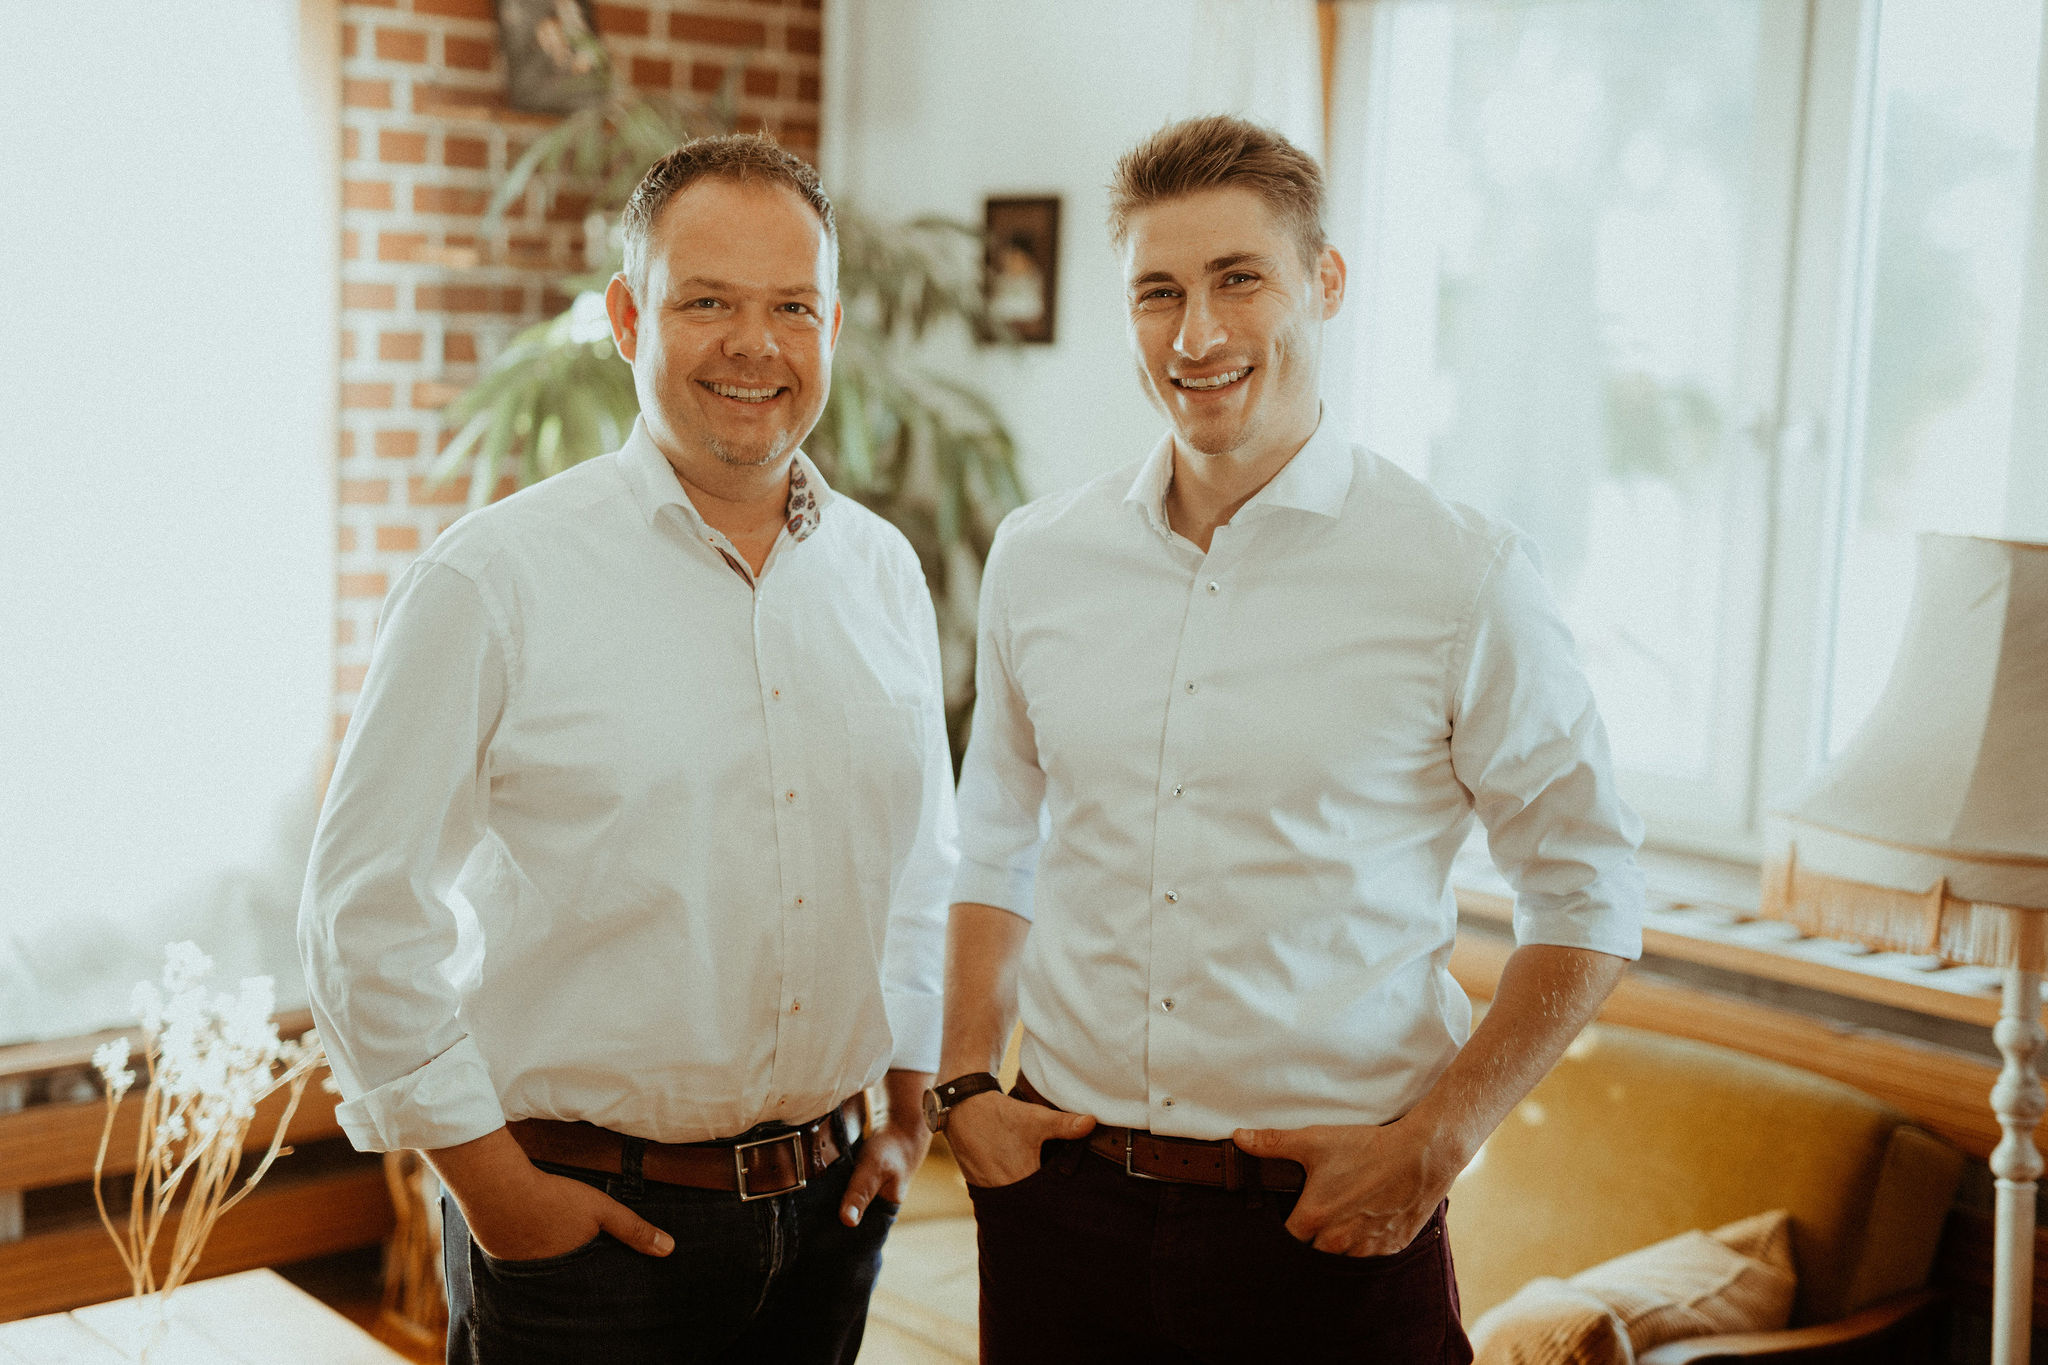 Hagen Herholdt und Christian Sporbert, Geschäftsführer von HS Immobilienberatung